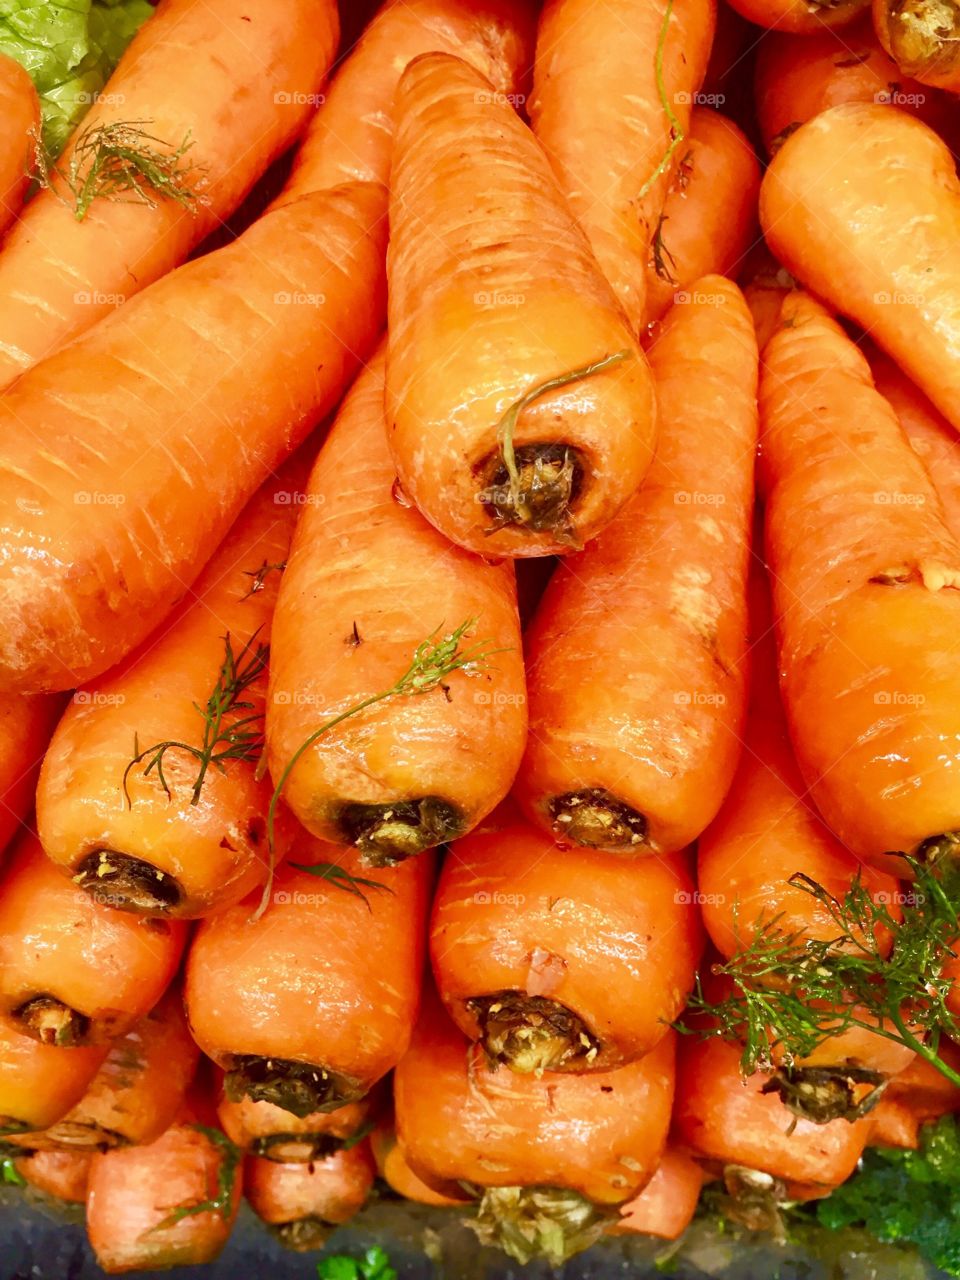 Carrots
